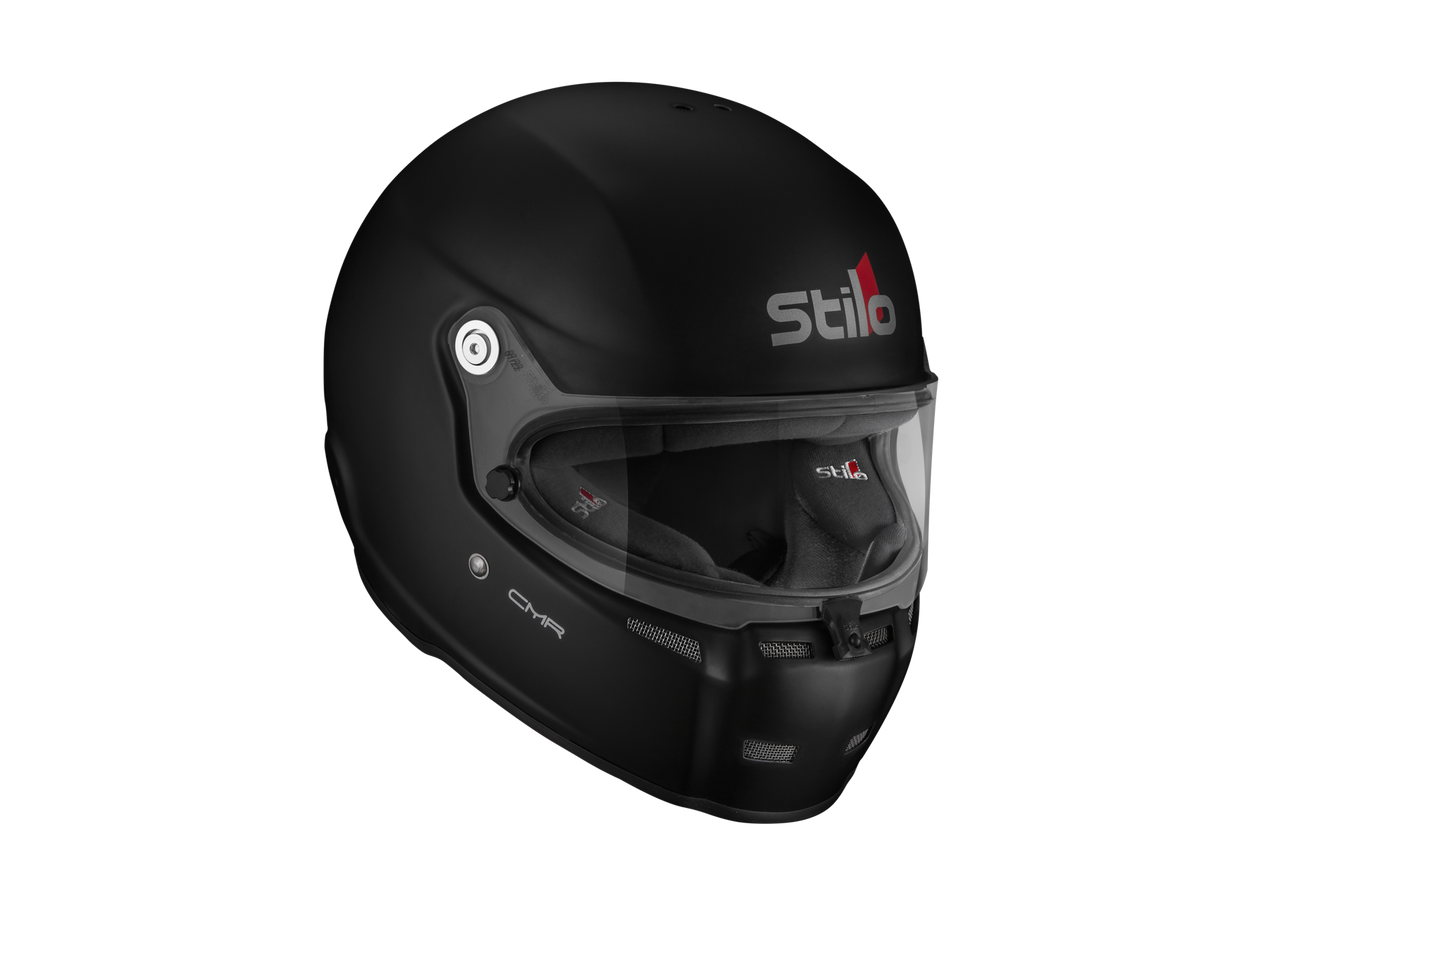 Stilo ST5 CMR Kart Helmet - Matt Black